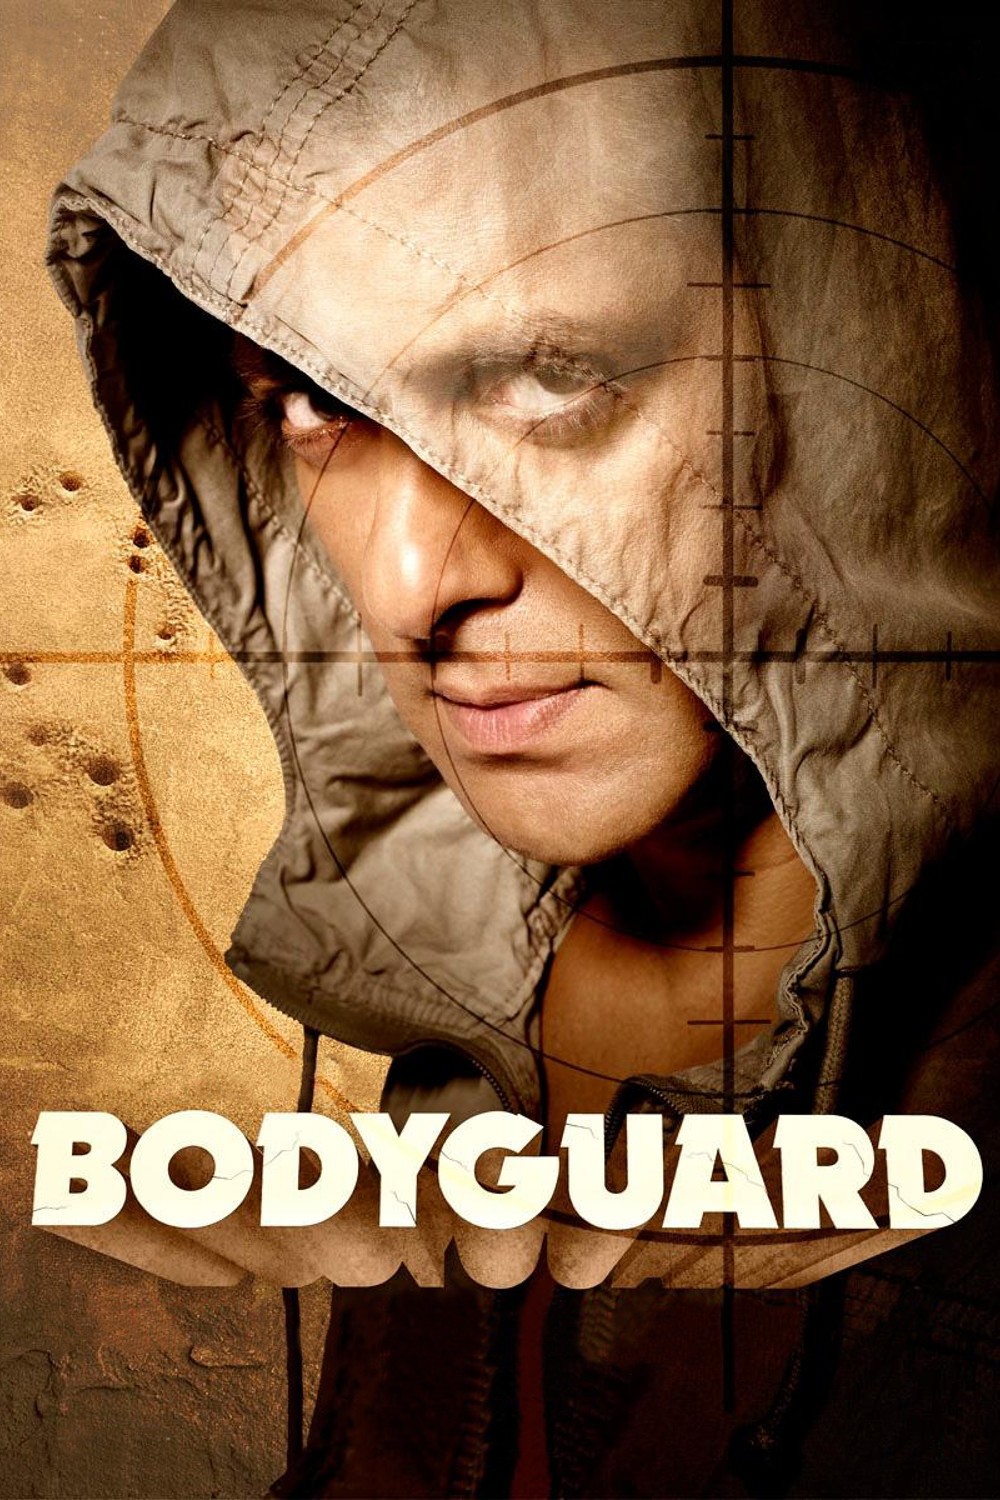 دانلود فیلم Bodyguard 2011